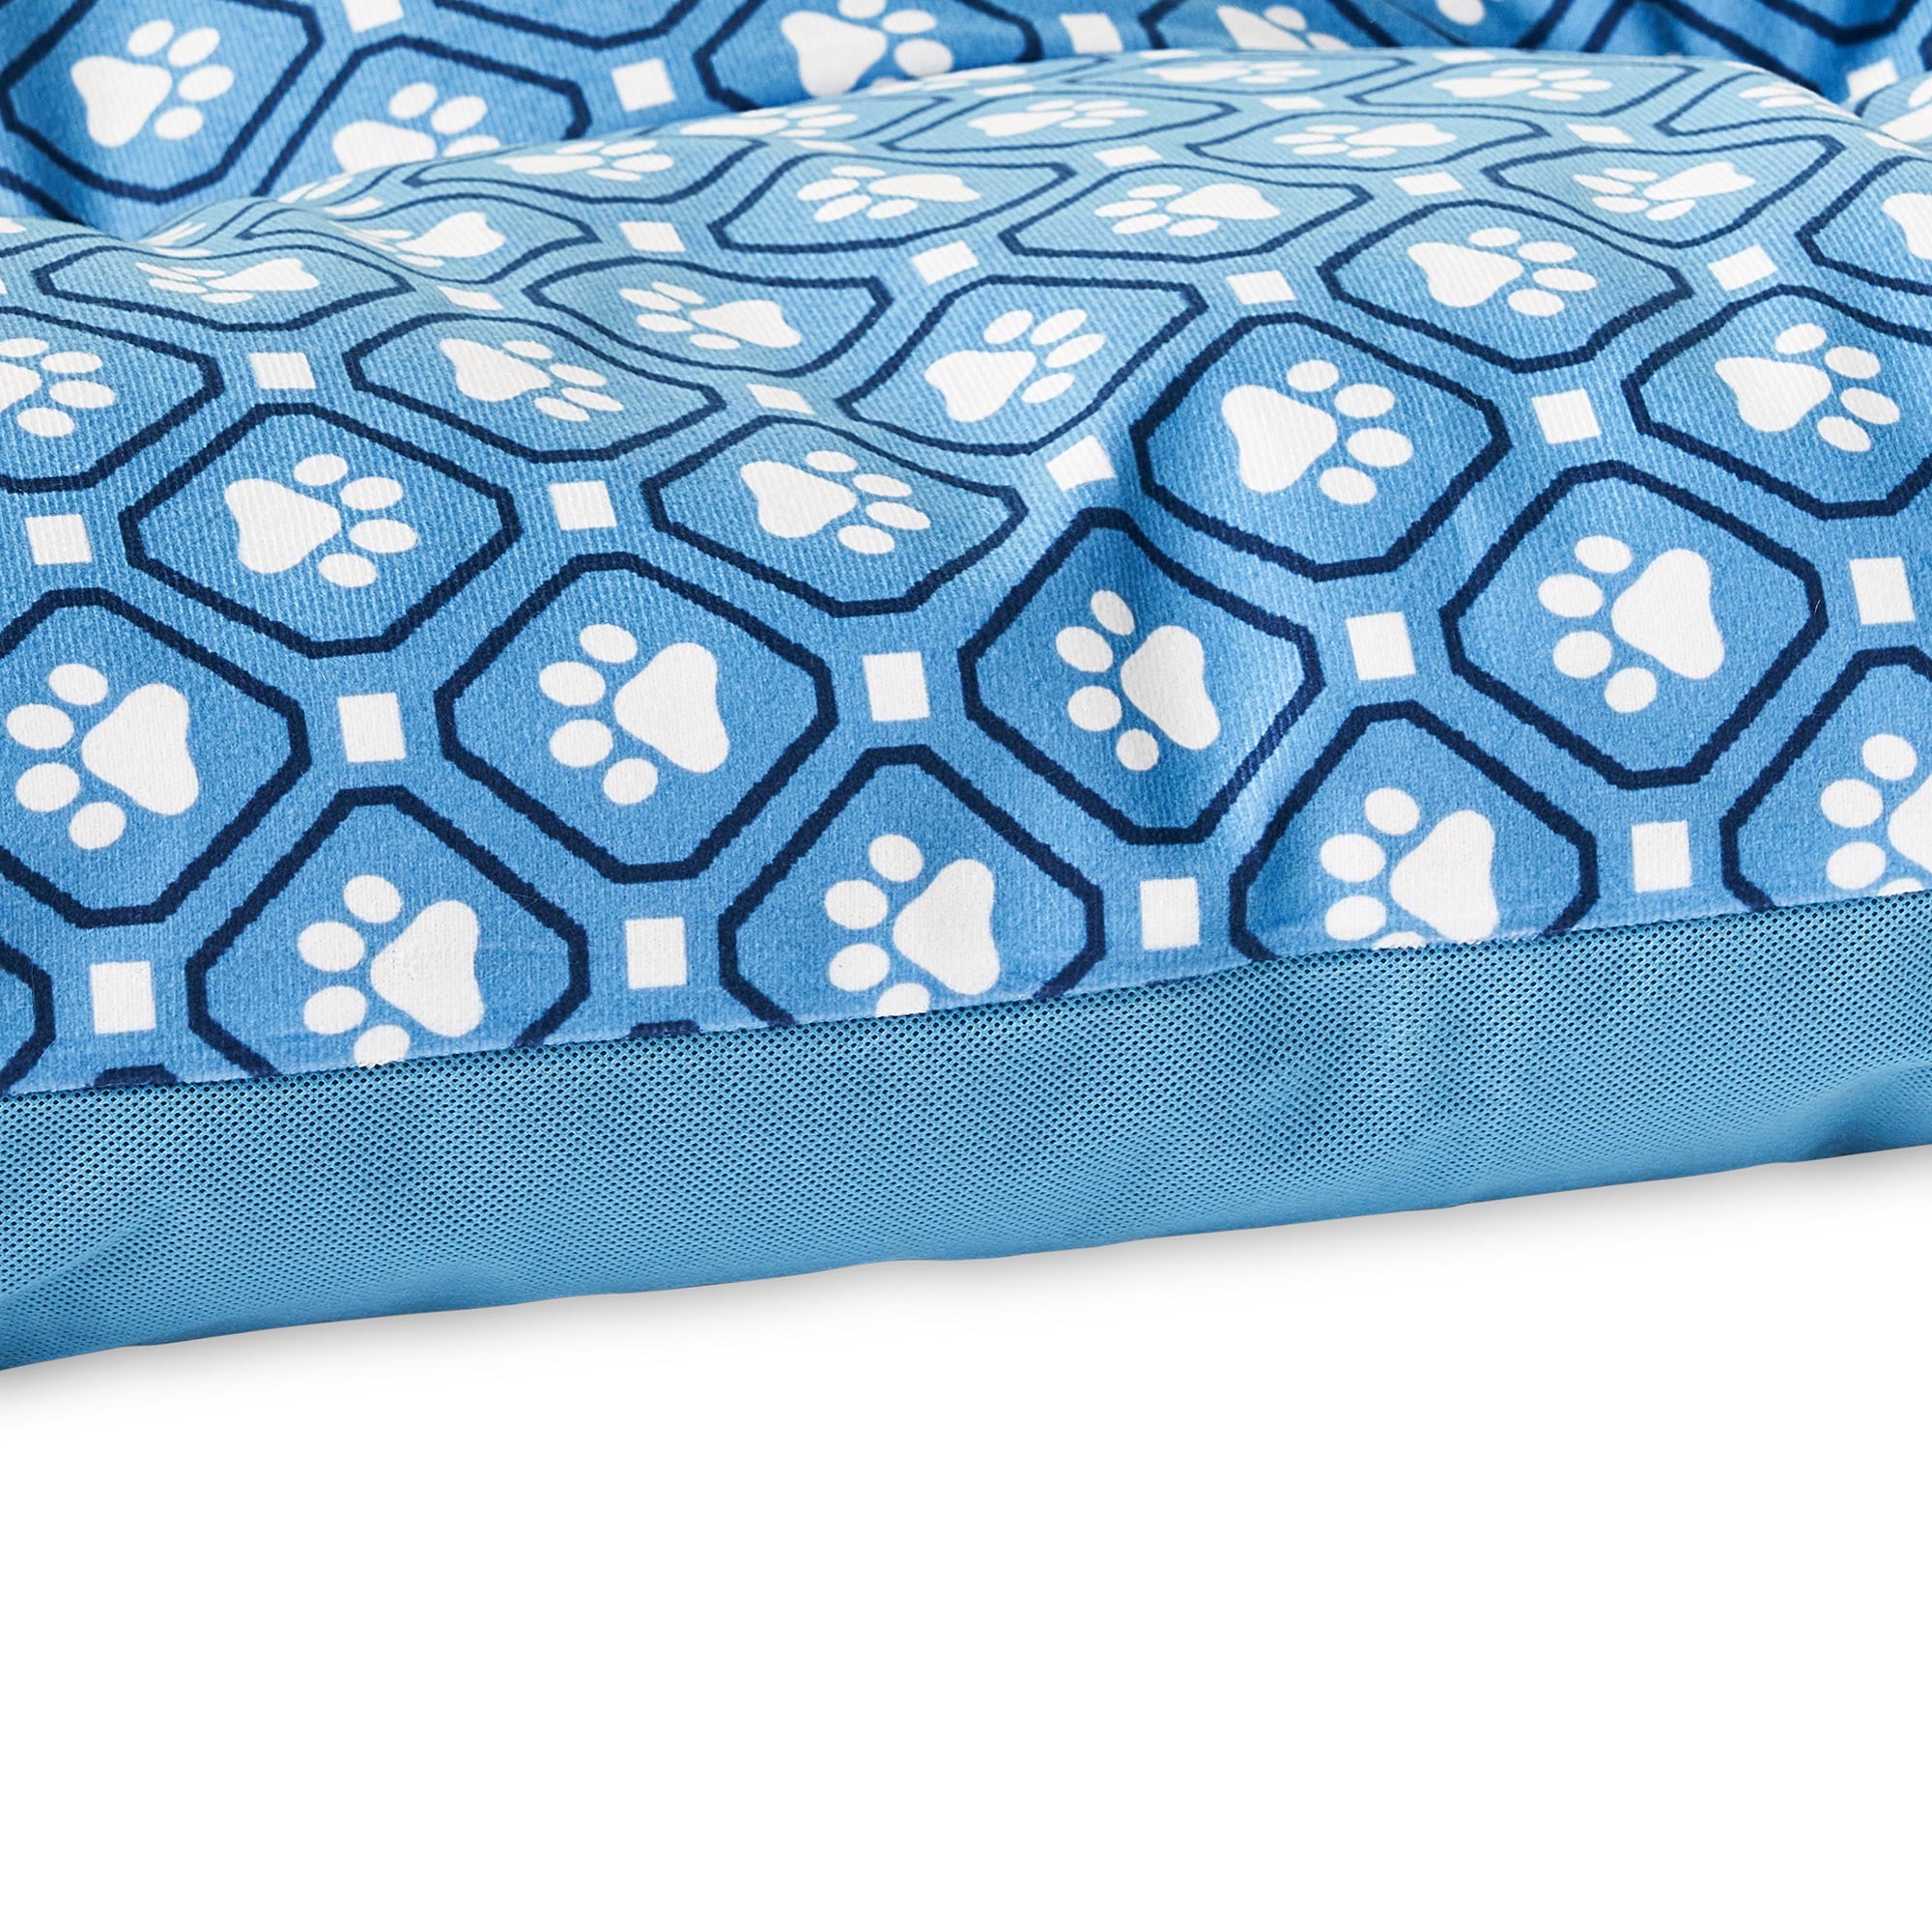 Vibrant Life Medium Tufted Plush Dog Bed， Blue Paw